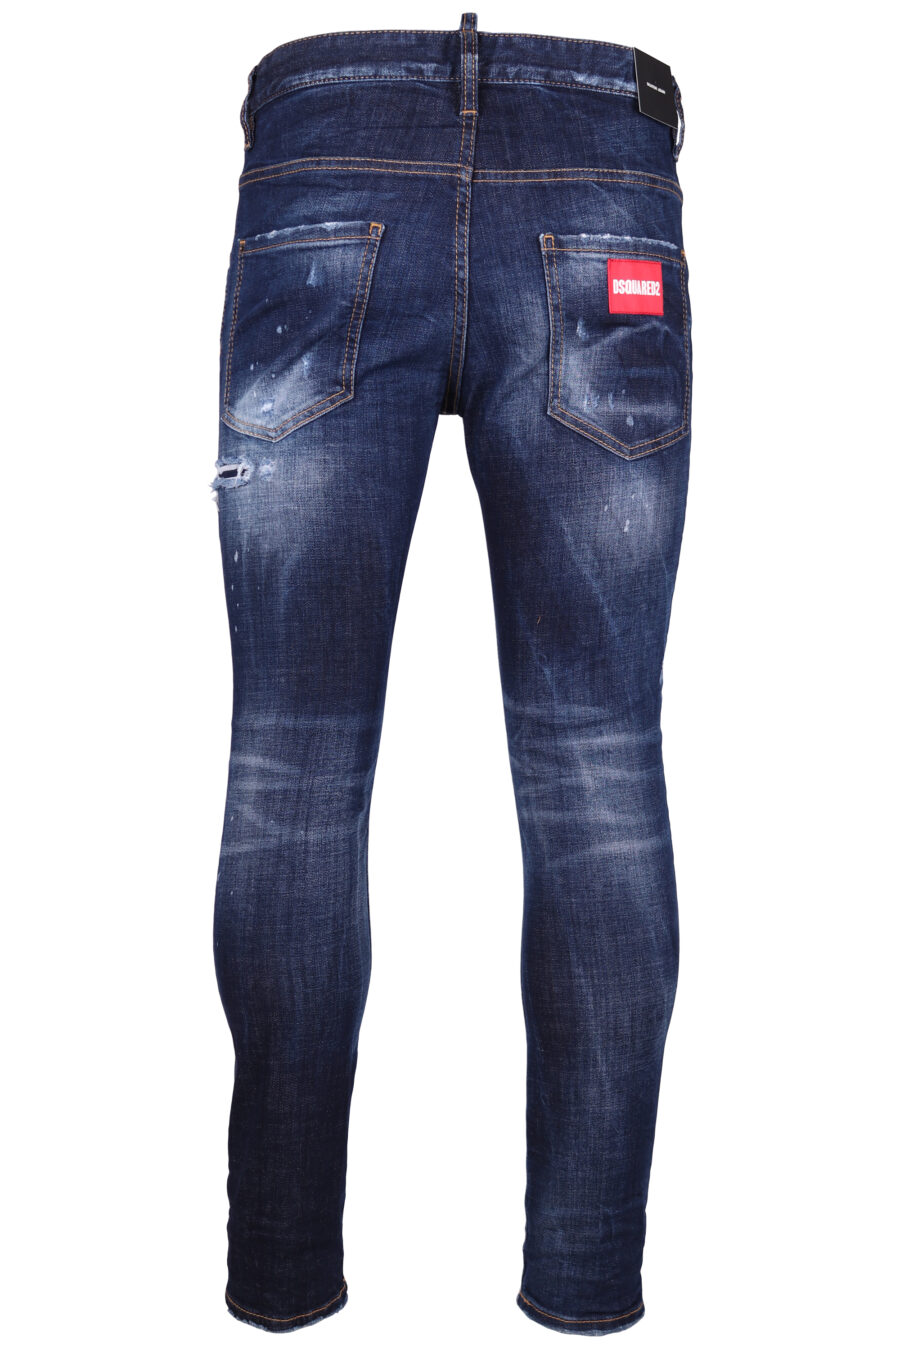 Halbdurchsichtige dunkelblaue "Skater"-Jeans mit roten Details - IMG 9292 1